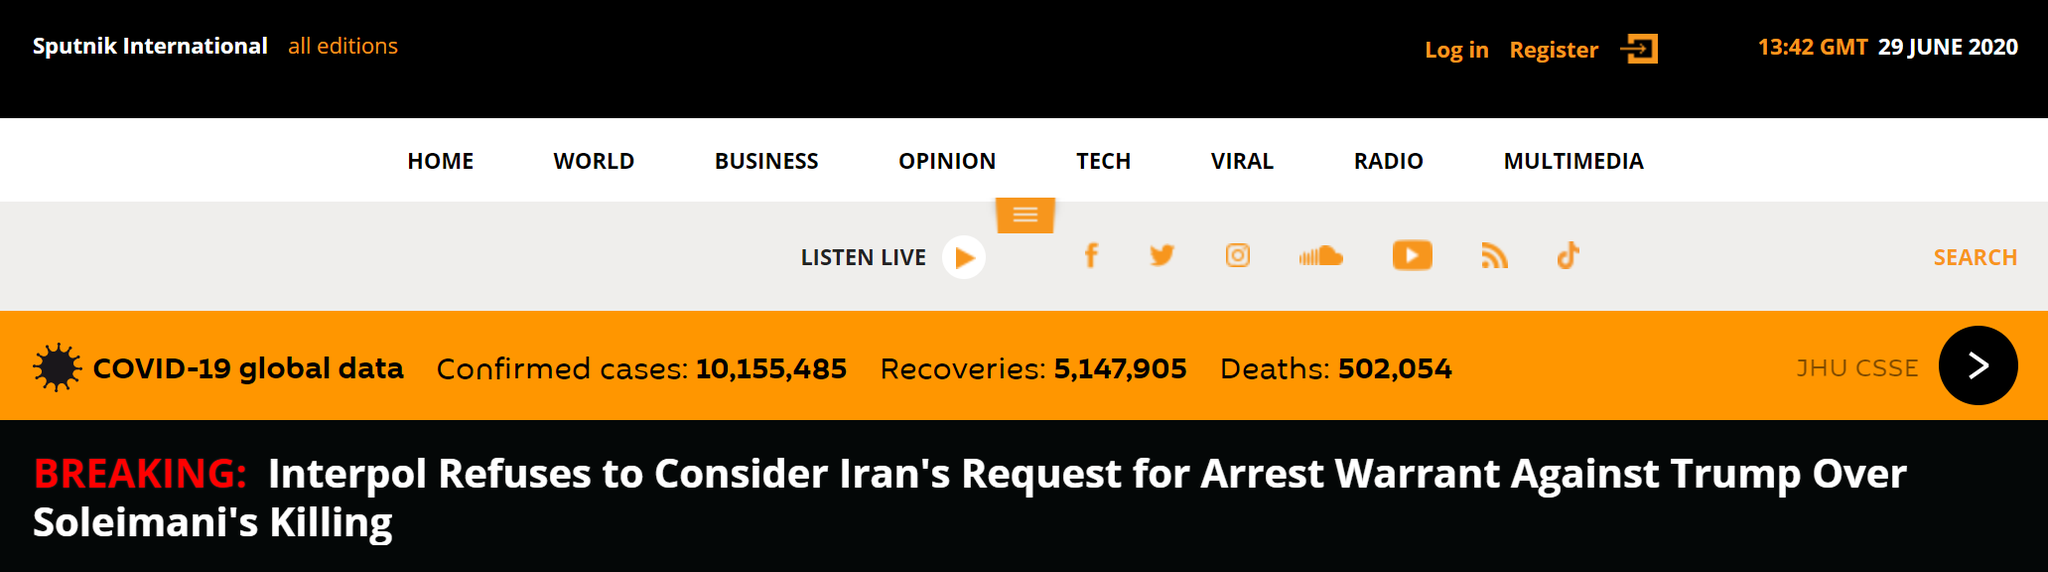 国际刑警组织拒绝协助逮捕特朗普：不考虑伊朗的任何请求